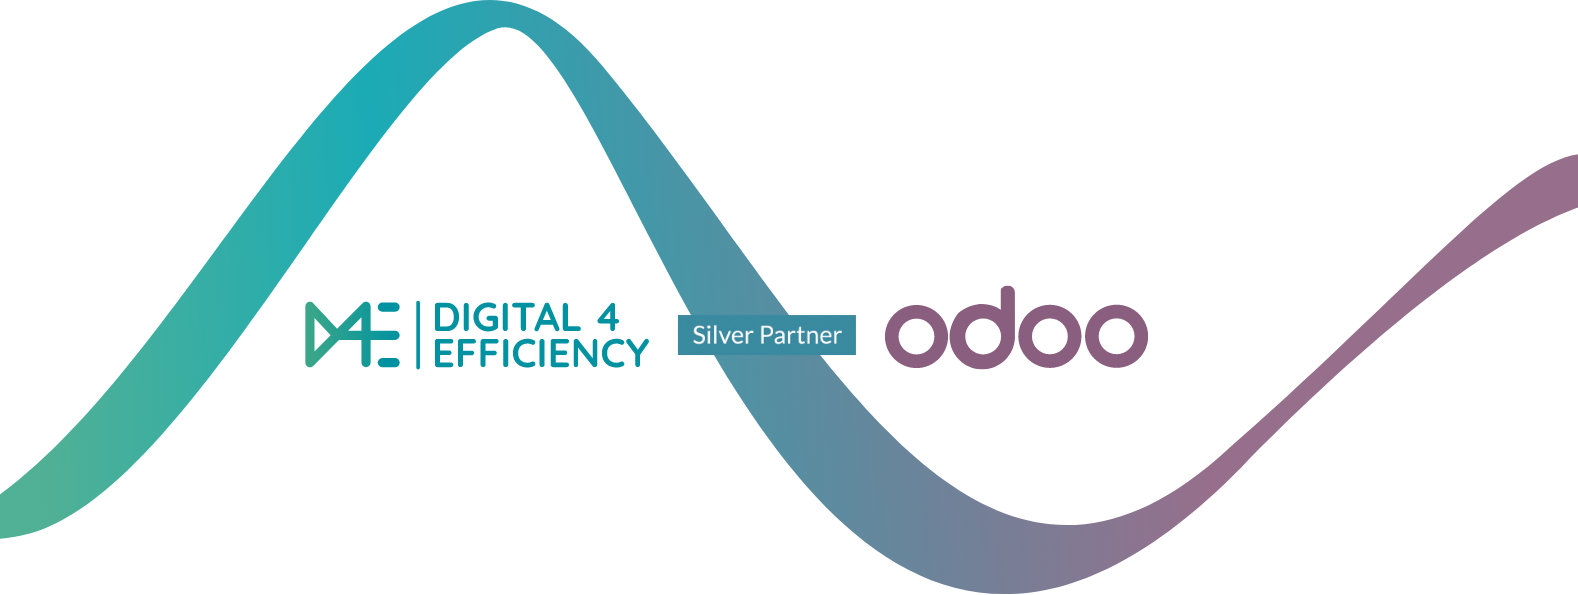 D4E Digital4Efficiency partenaire intégrateur de la solution Odoo